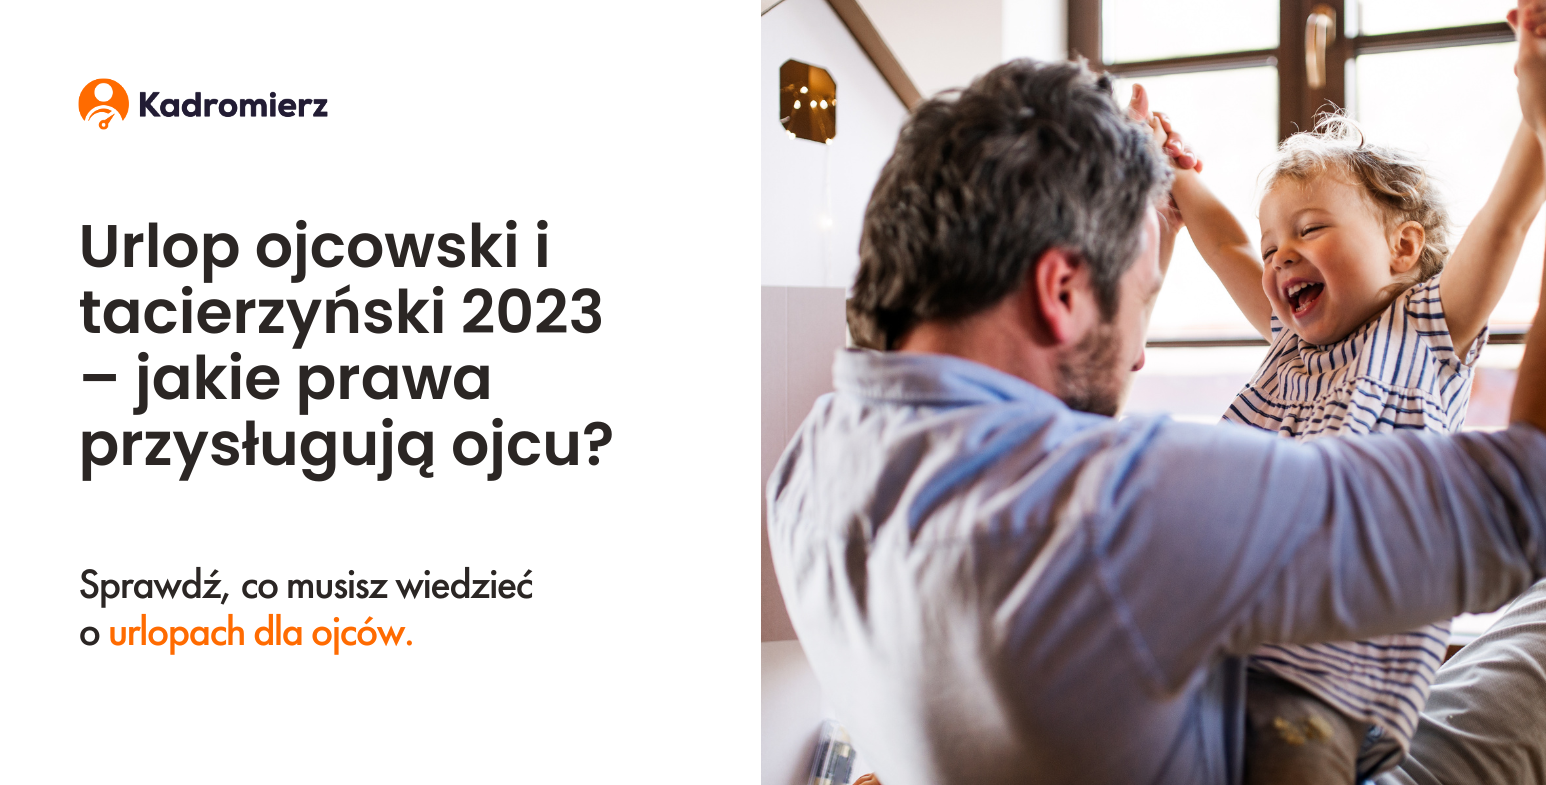 Urlop ojcowski i tacierzyński 2023 – jakie prawa przysługują ojcu?